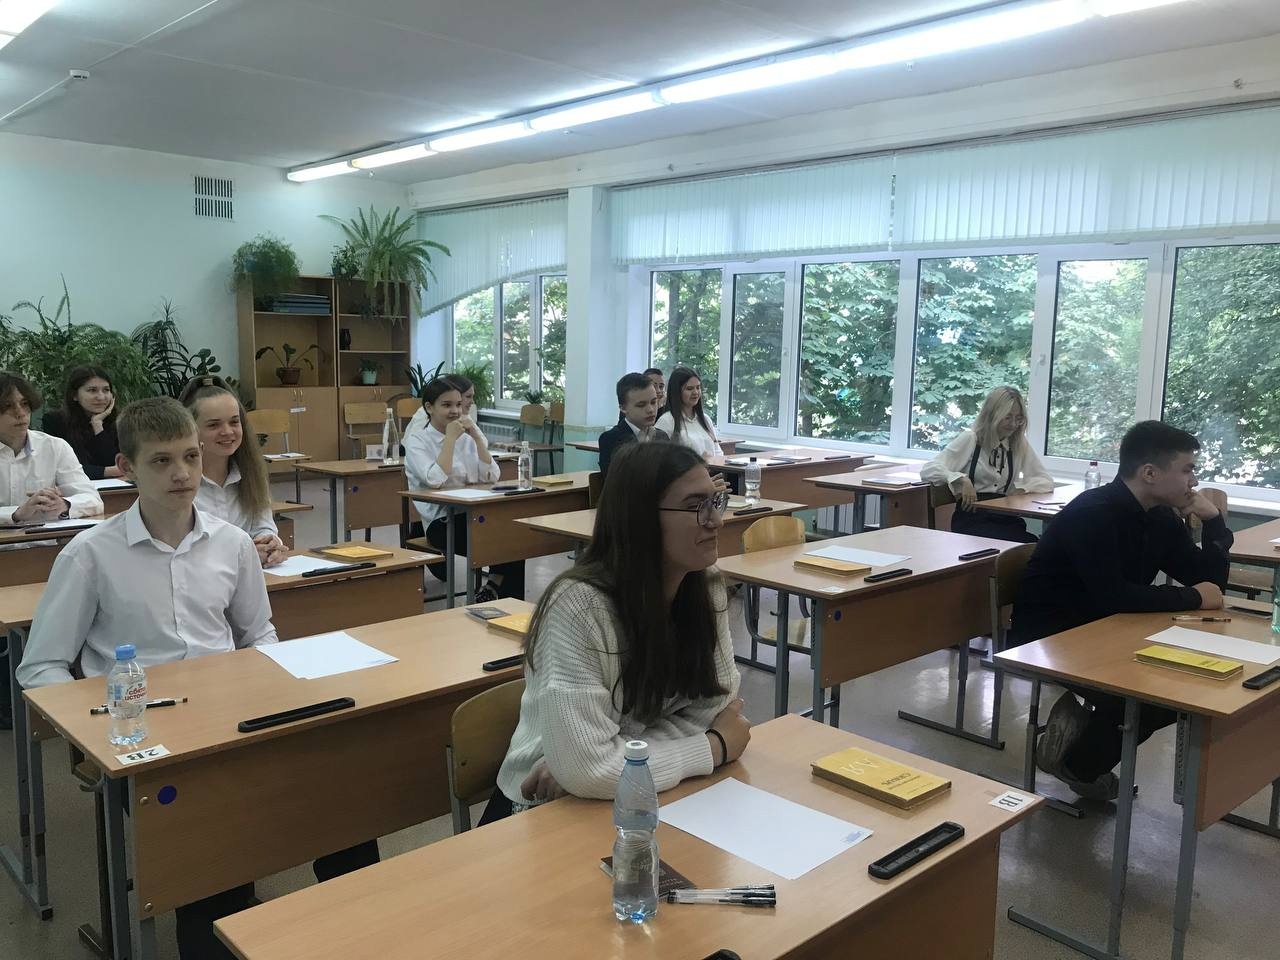 Ульяновские школьники готовятся к сдаче основного государственного экзамена.